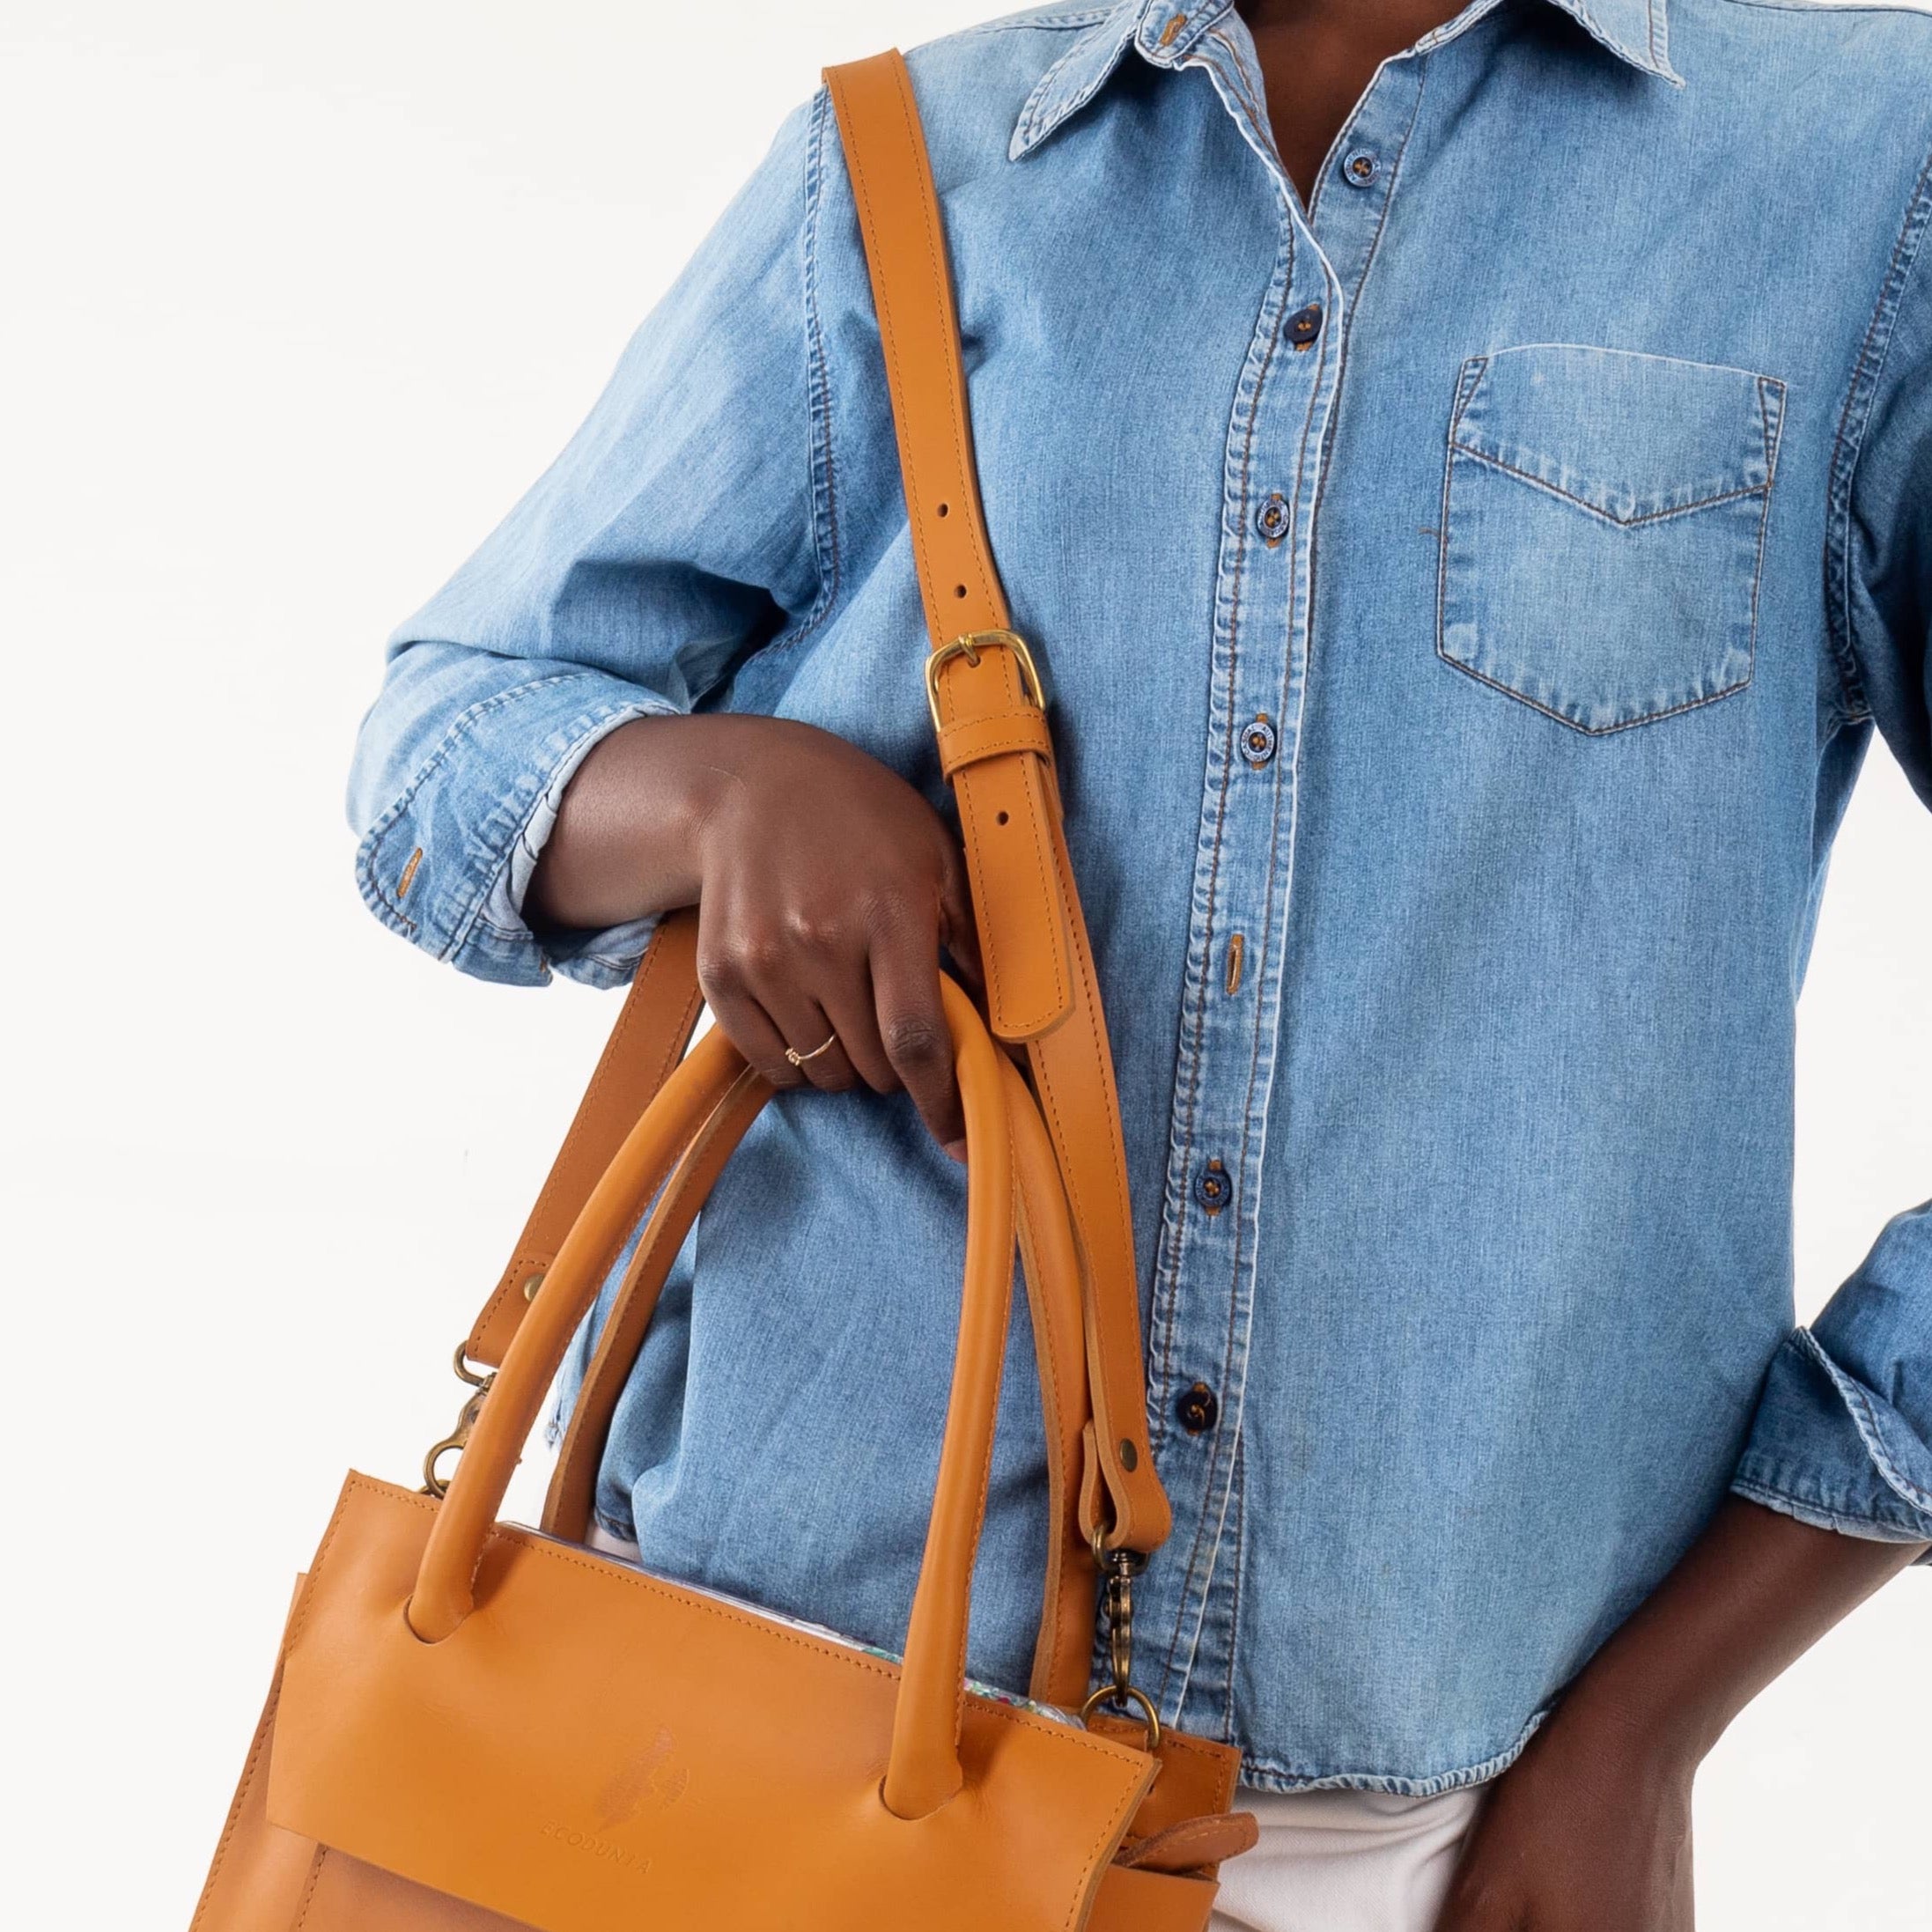 Nakuru Leather  Bag- Tan leather